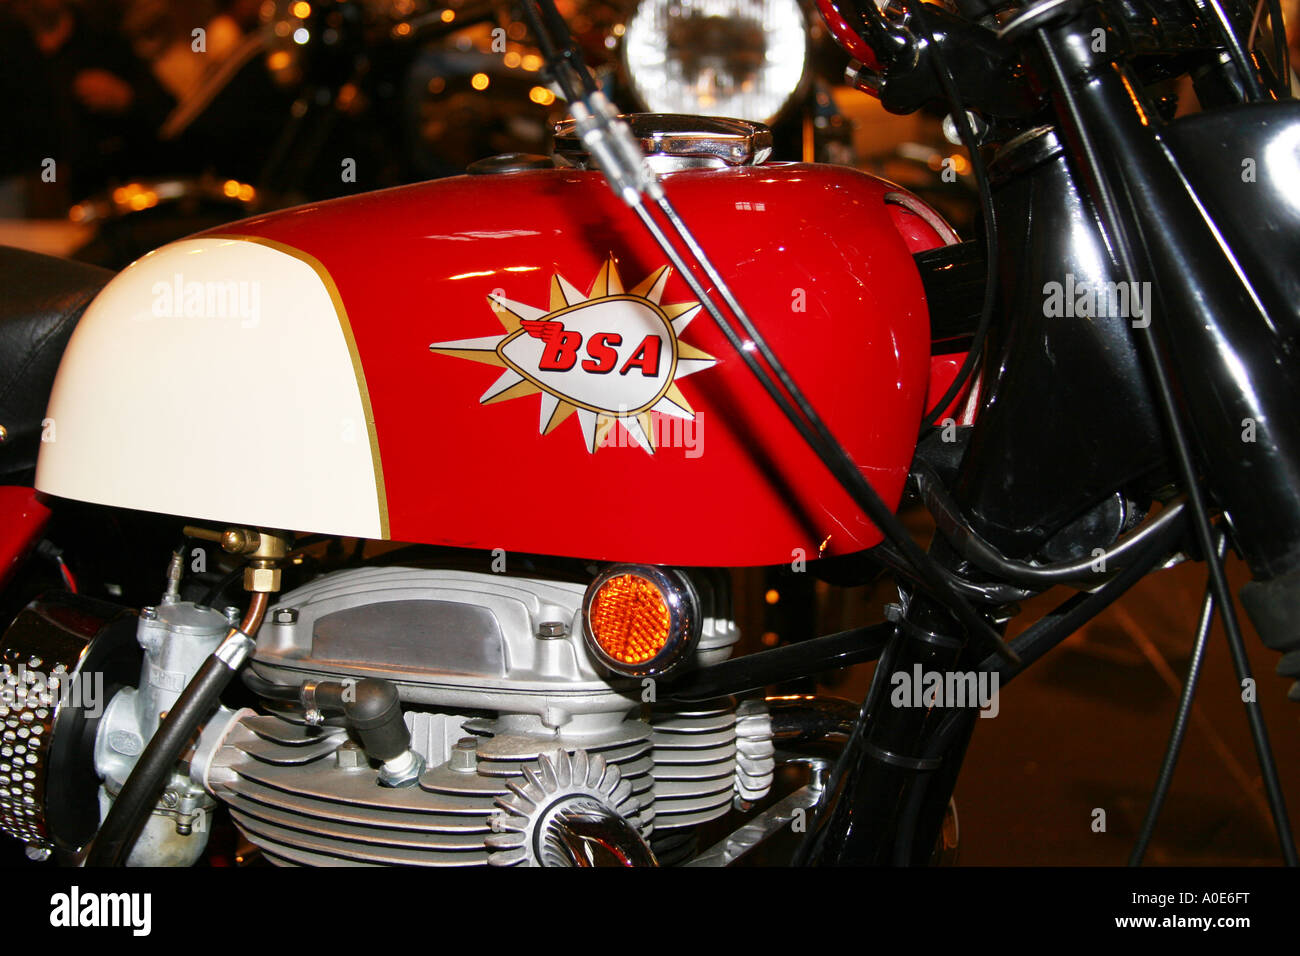 Il serbatoio e il distintivo della restaurata BSA moto al Bike Show al NEC. Foto Stock